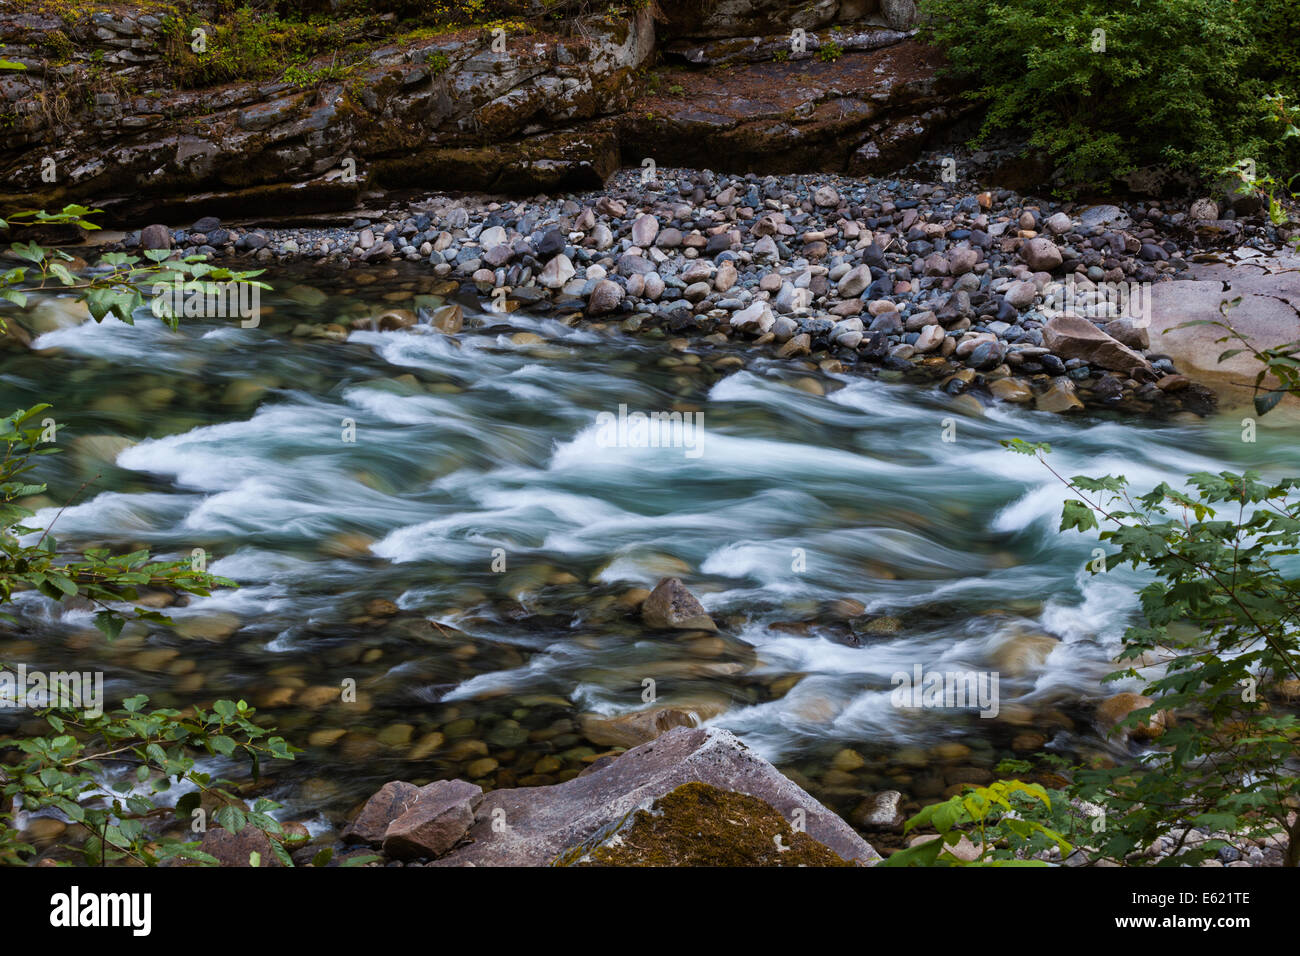 Coquihalla fiume che scorre verso uno stretto canyon di roccia di granito, nei pressi di speranza, British Columbia, Canada Foto Stock